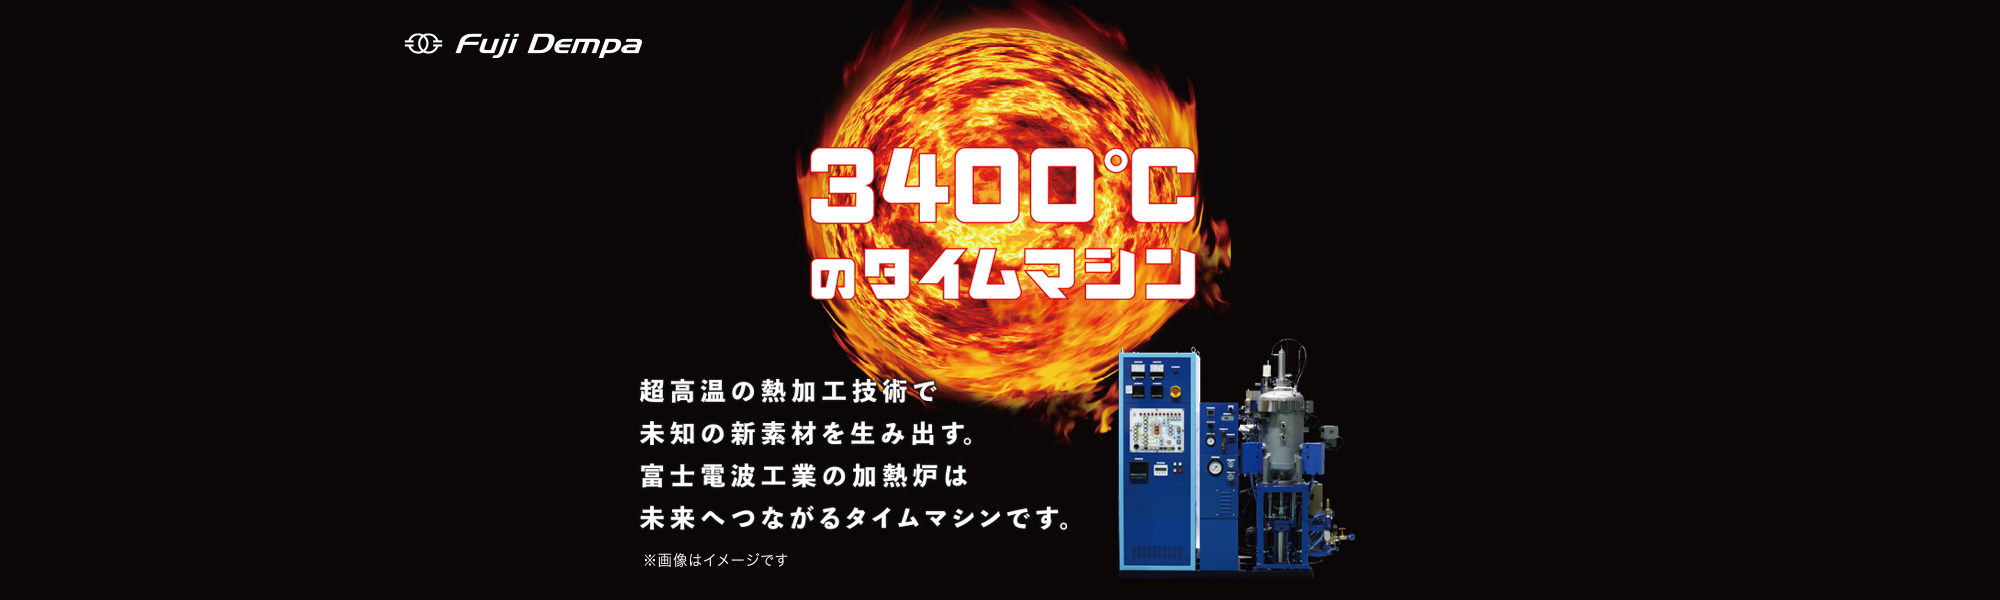 3400℃のタイムマシン 超高音の熱加工技術で道の新素材を生み出す。富士電波工業の加熱炉は未来へつながるタイムマシンです。 ※画像はイメージです